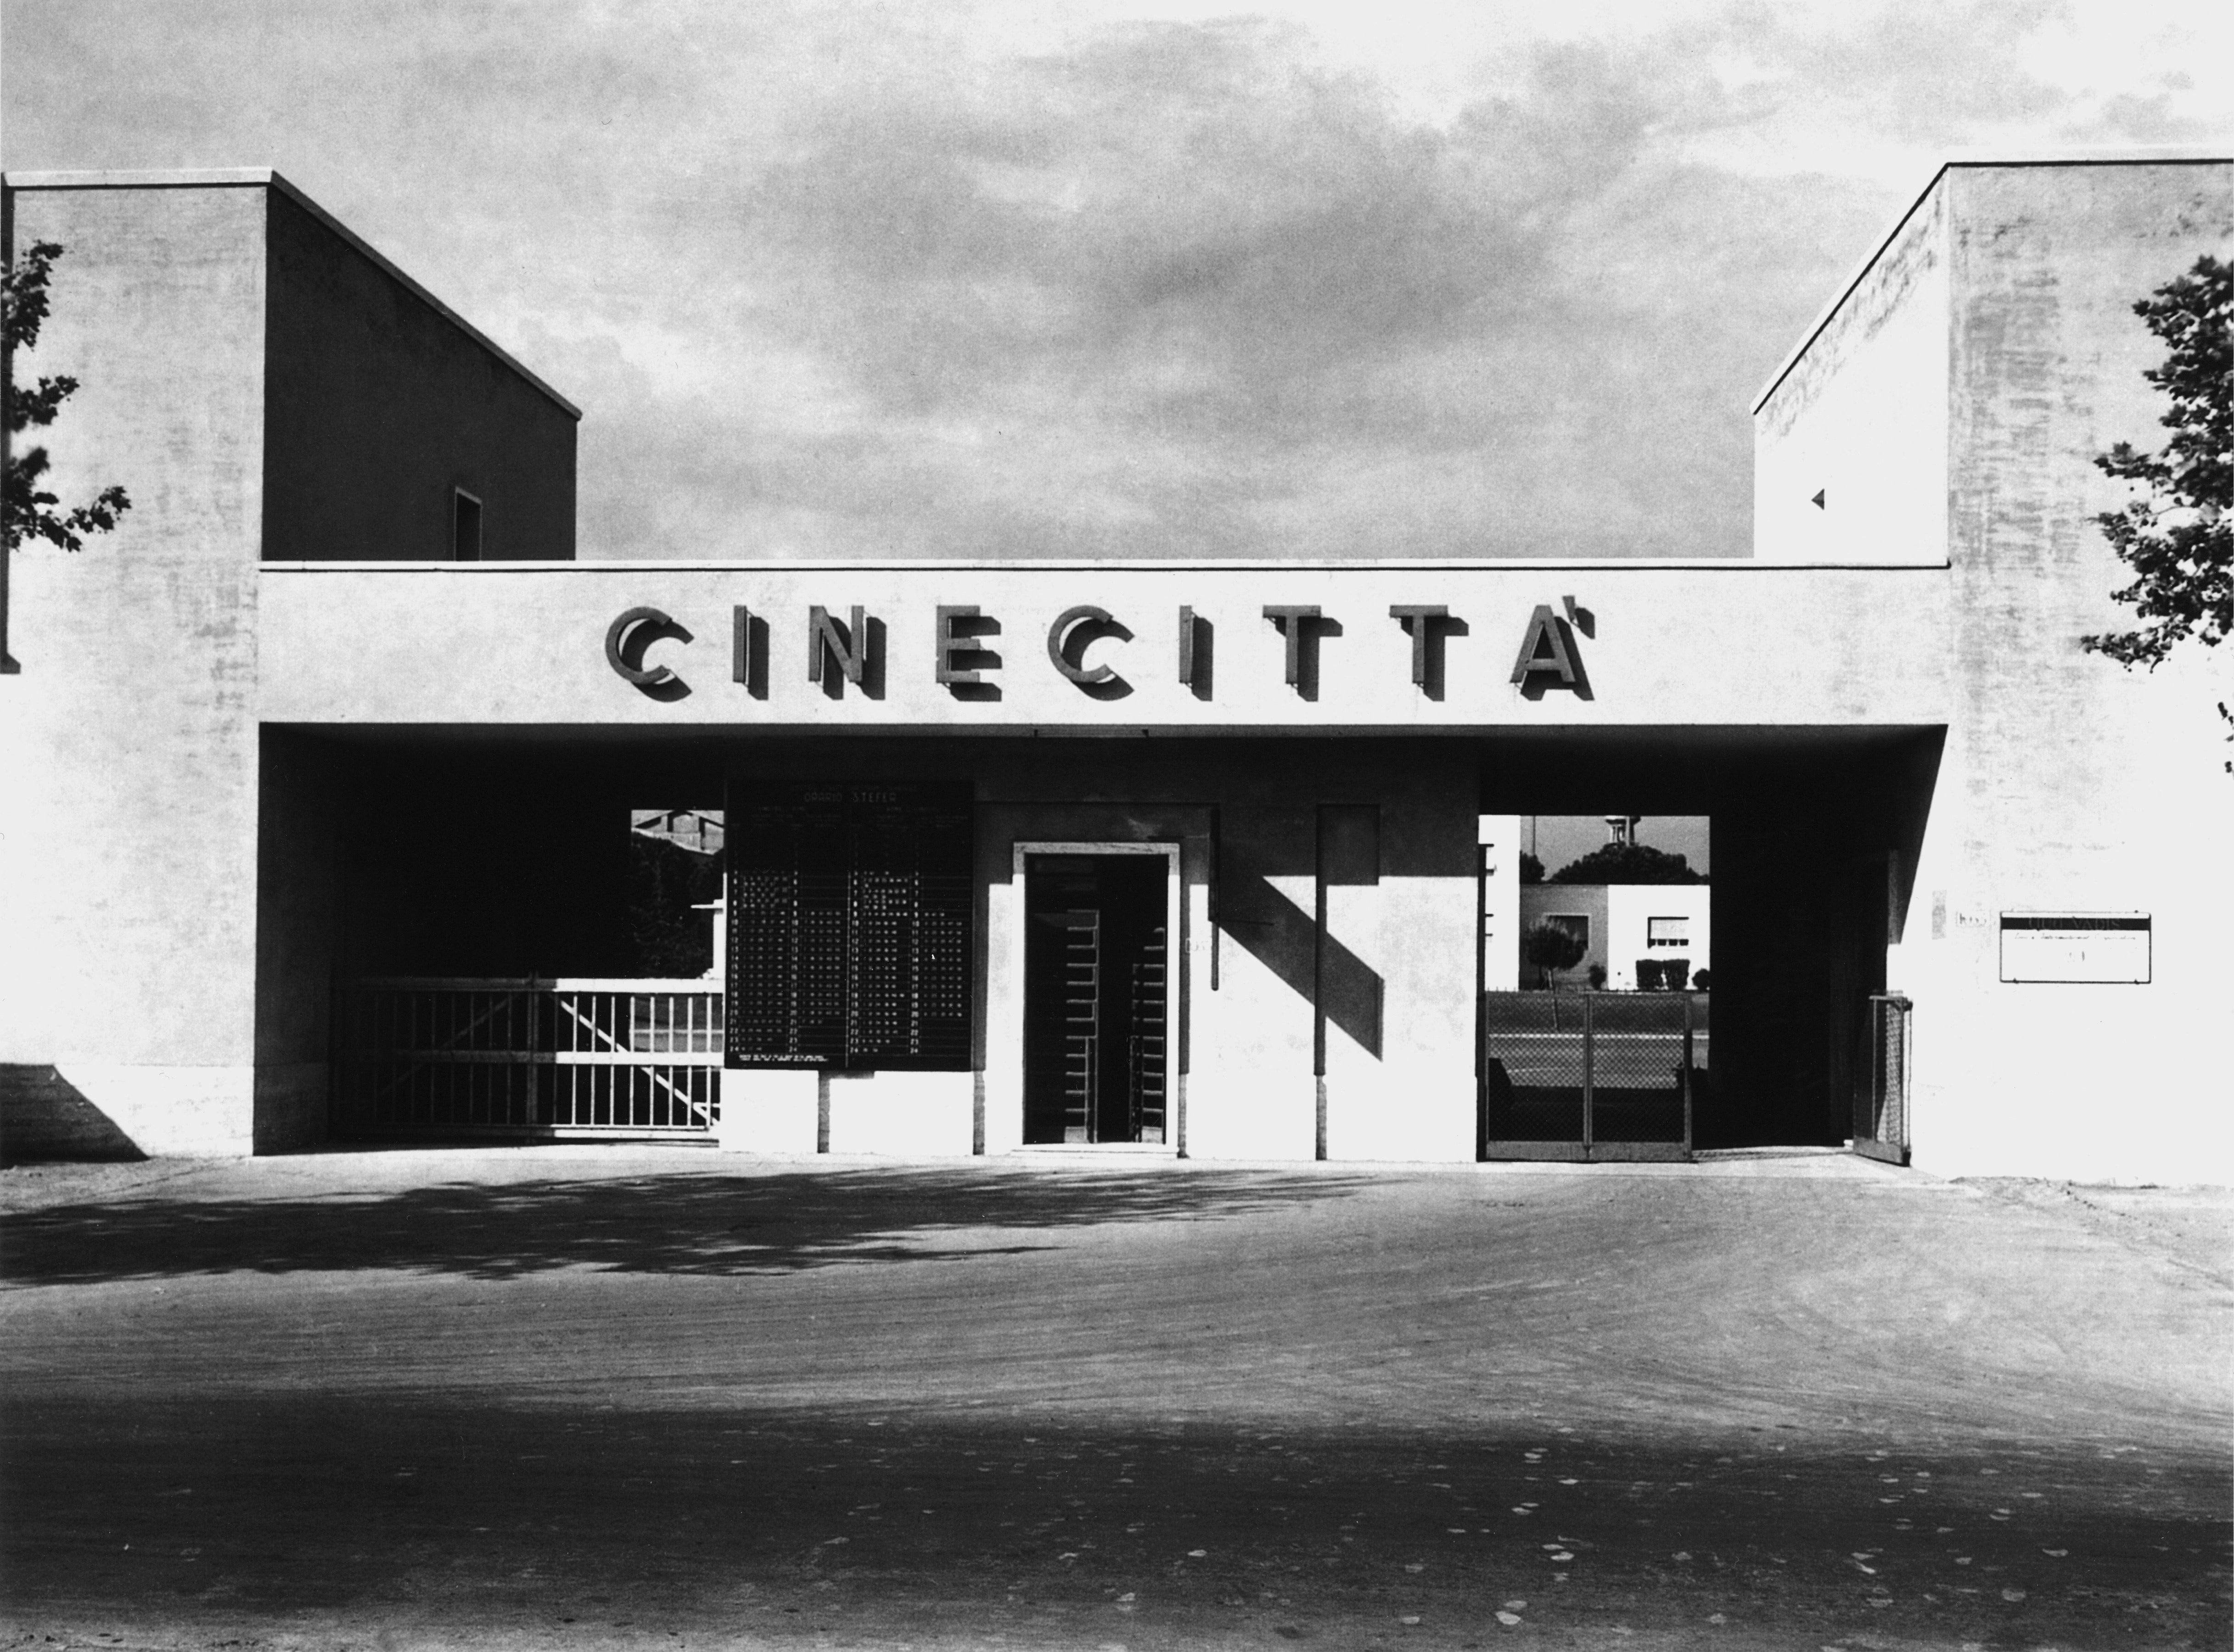 Cinecittà, inaugurata dal Duce nel 1937